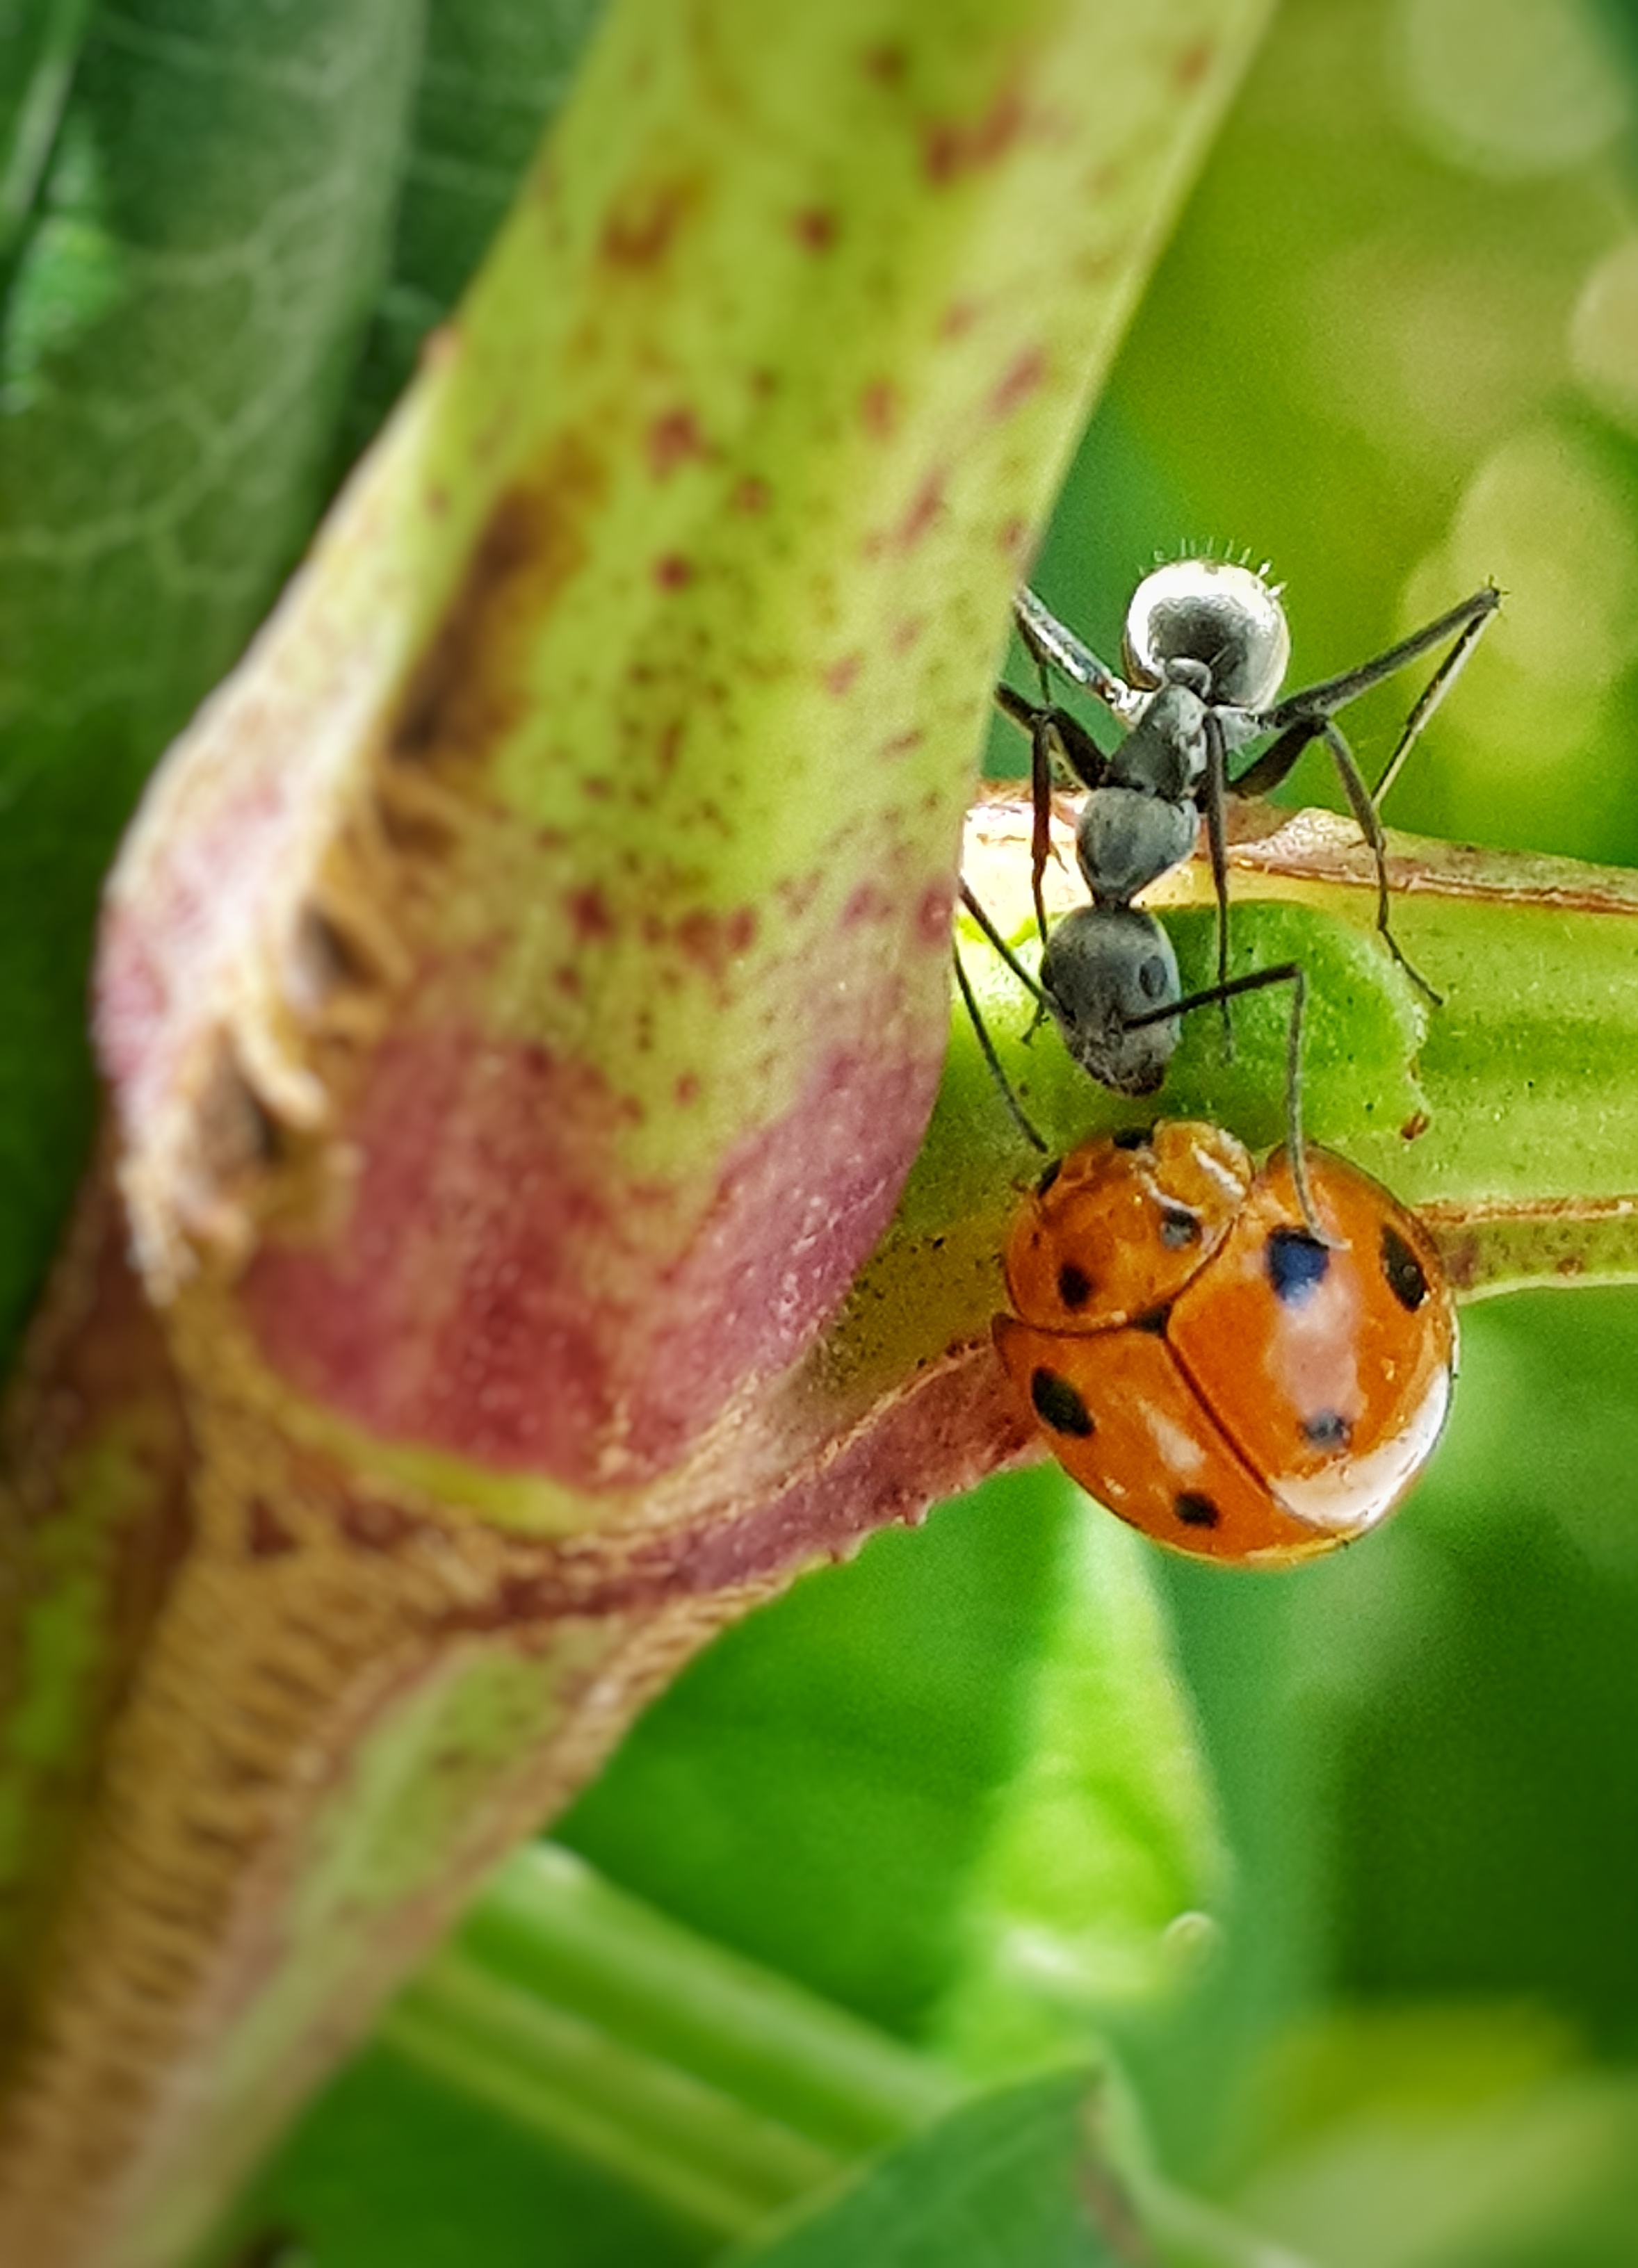 Ant and Ladybug